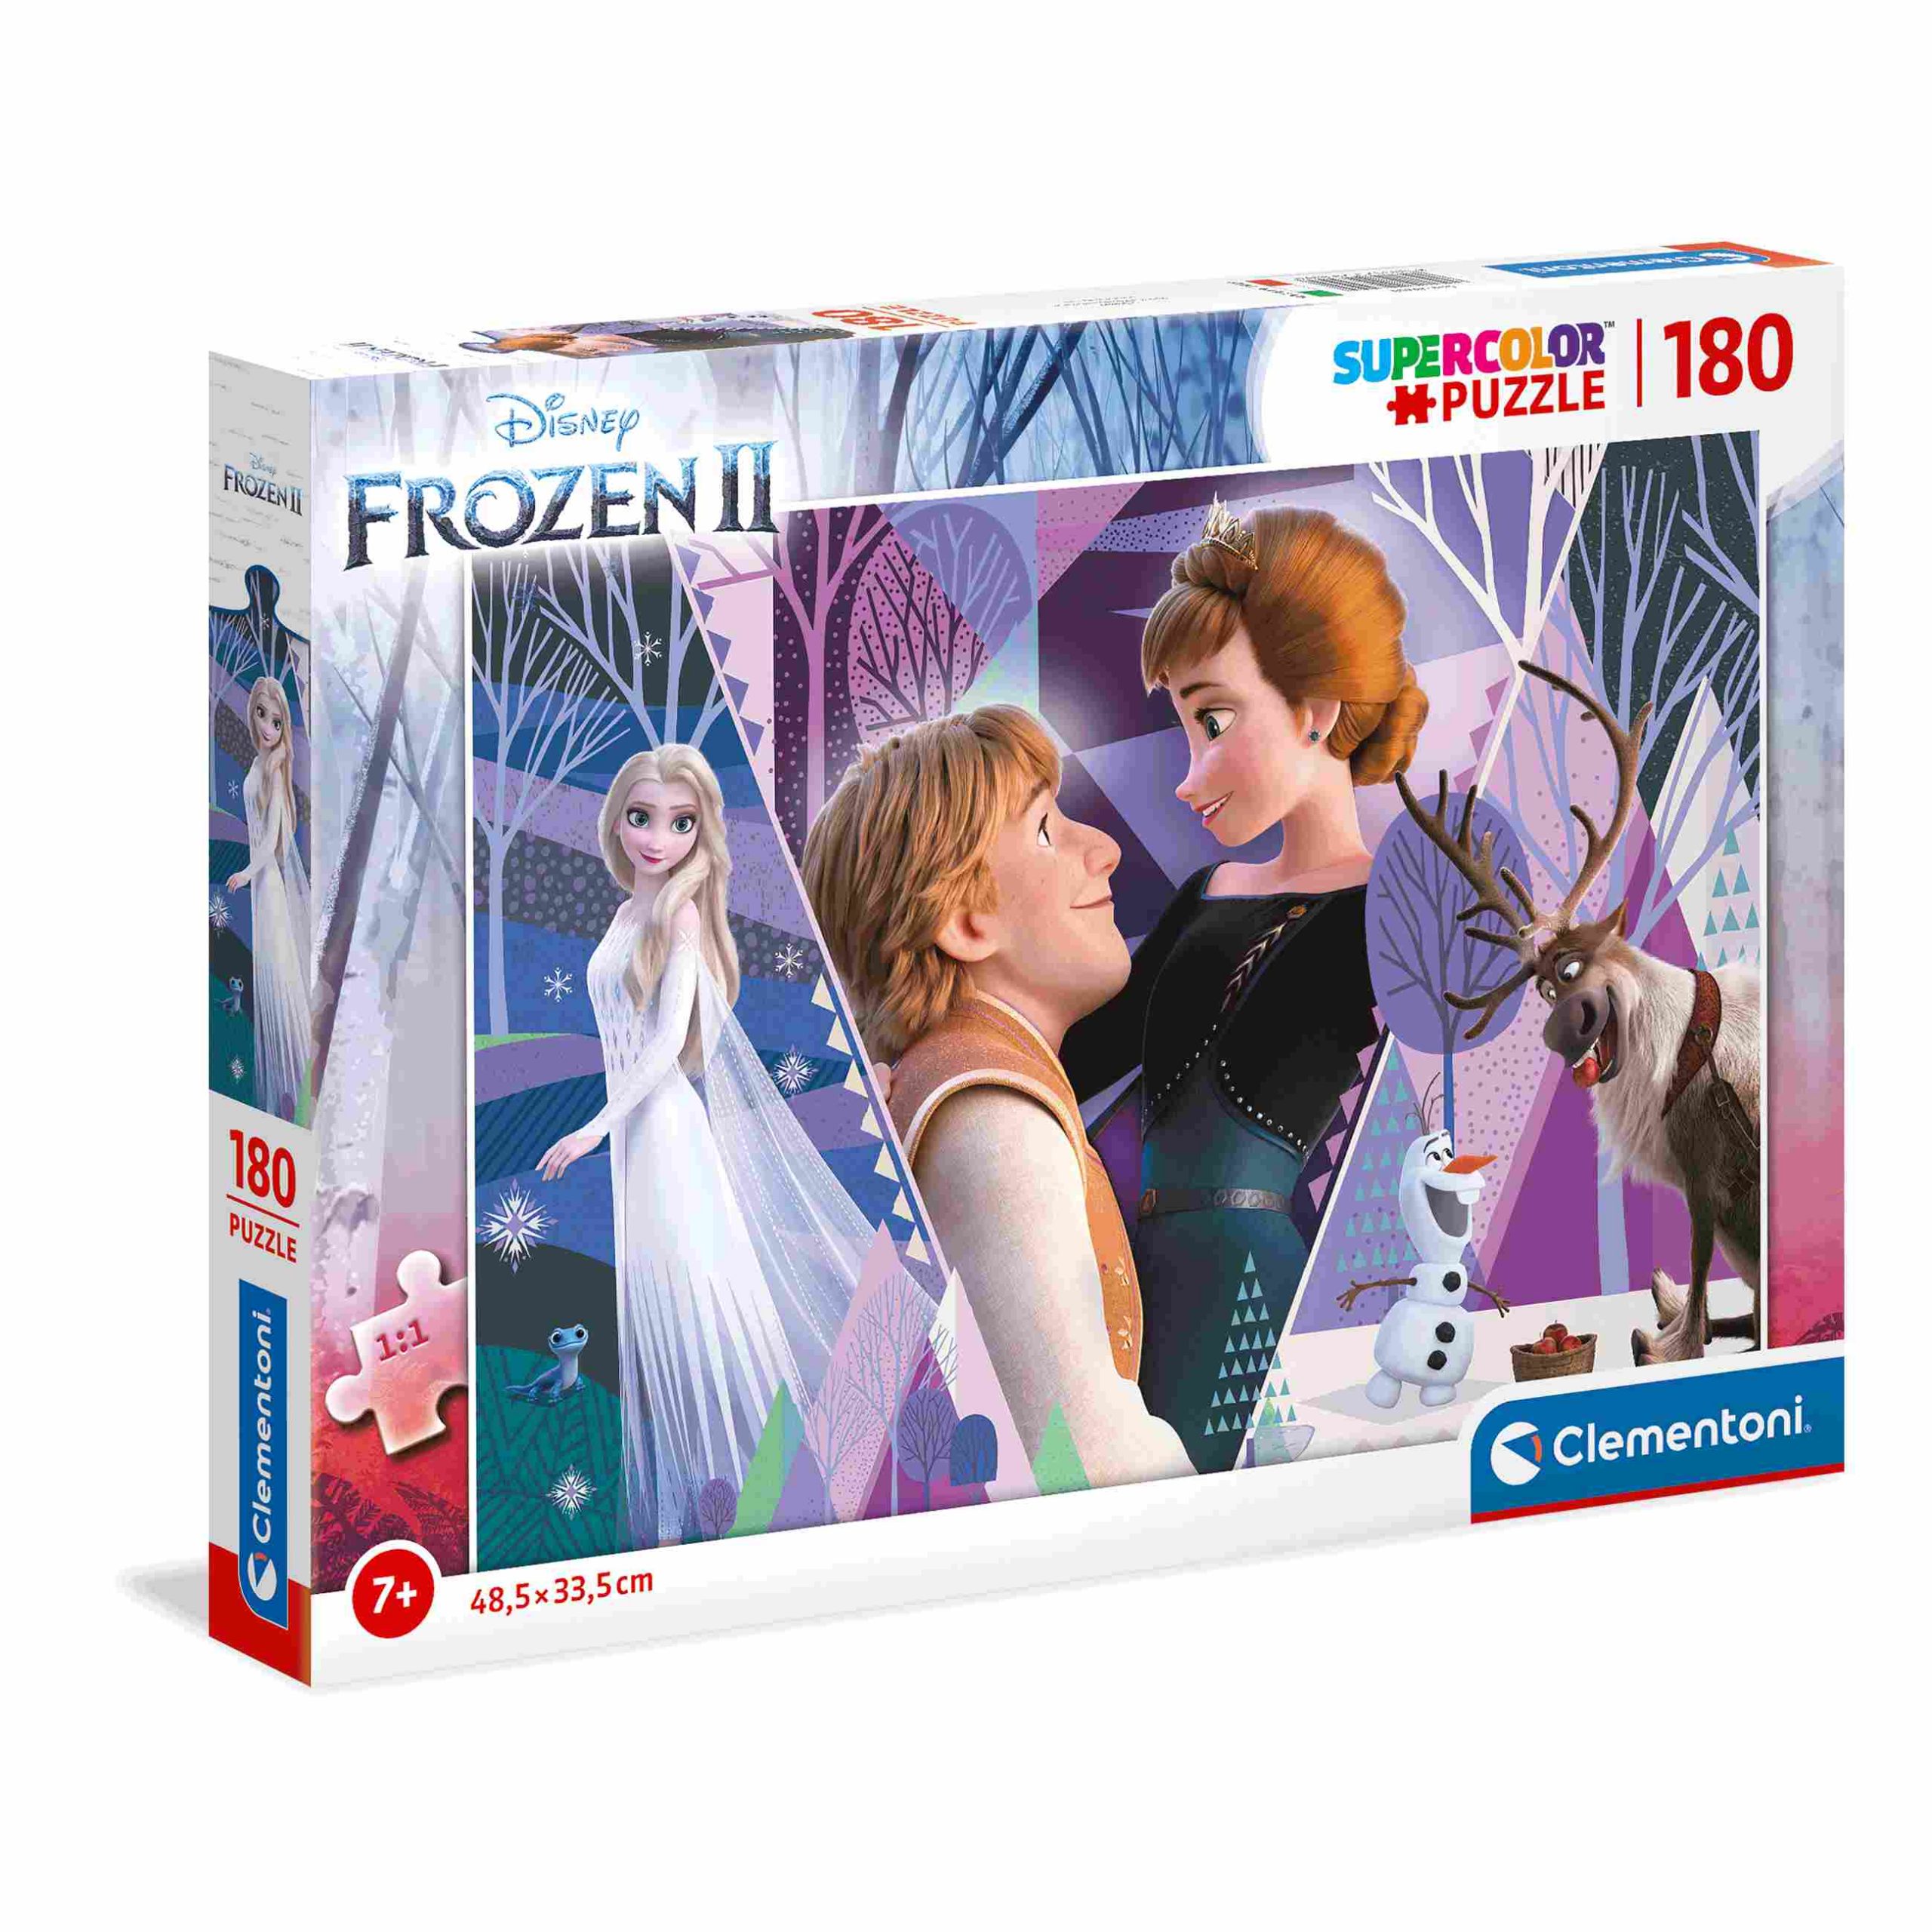 Clementoni - puzzle disney frozen 2 - 180 pezzi - CLEMENTONI, Frozen